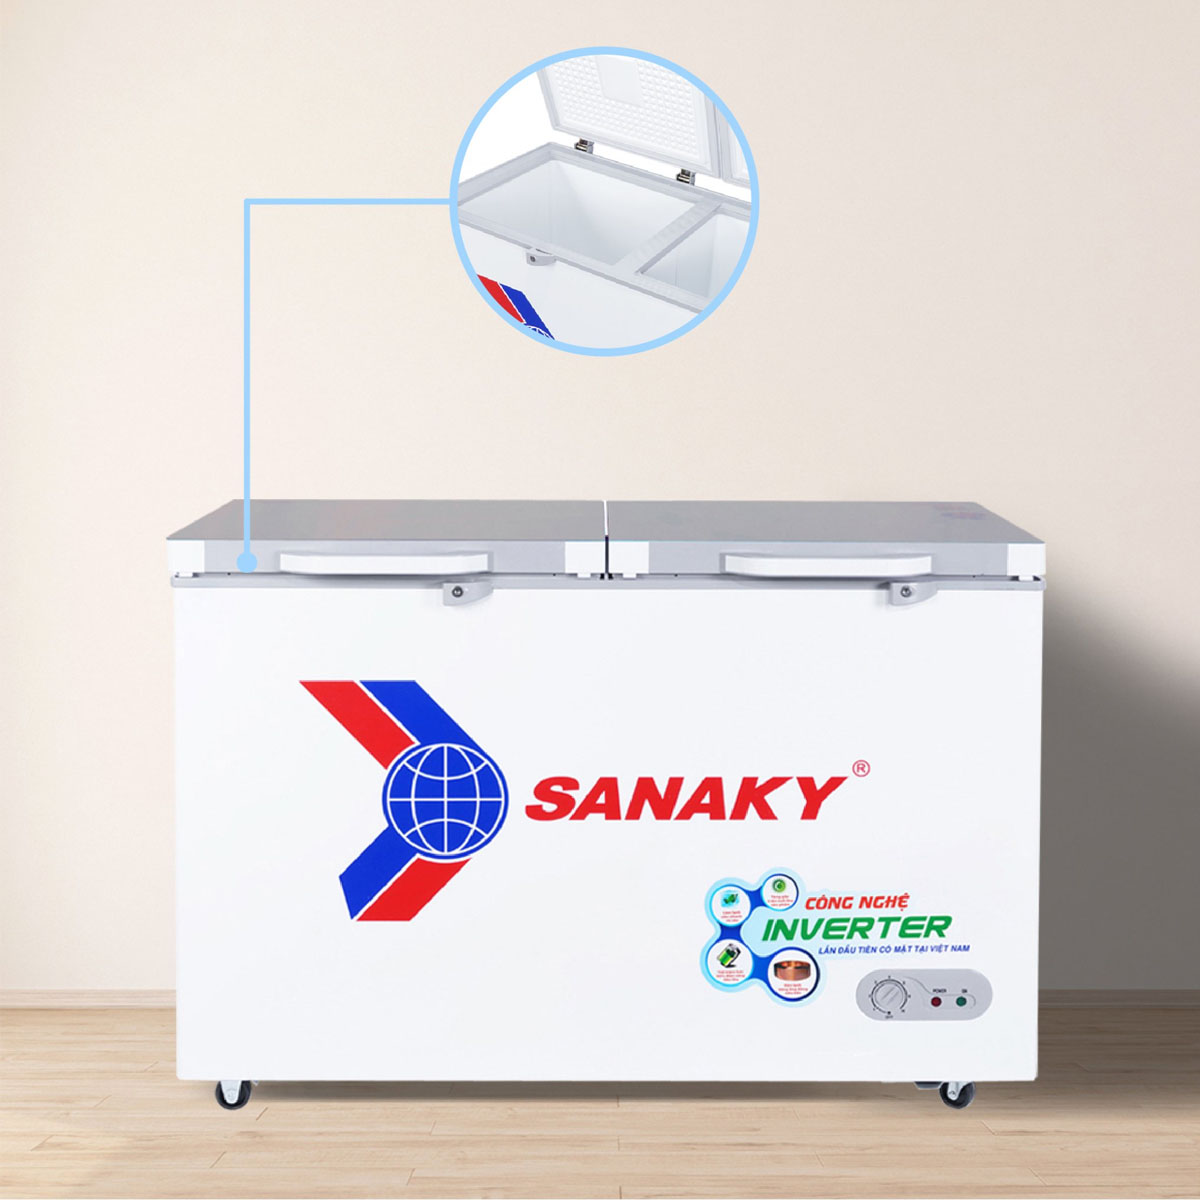 Tủ Đông Sanaky Inverter 305 Lít VH-4099A4 có lòng côi tủ phẳng